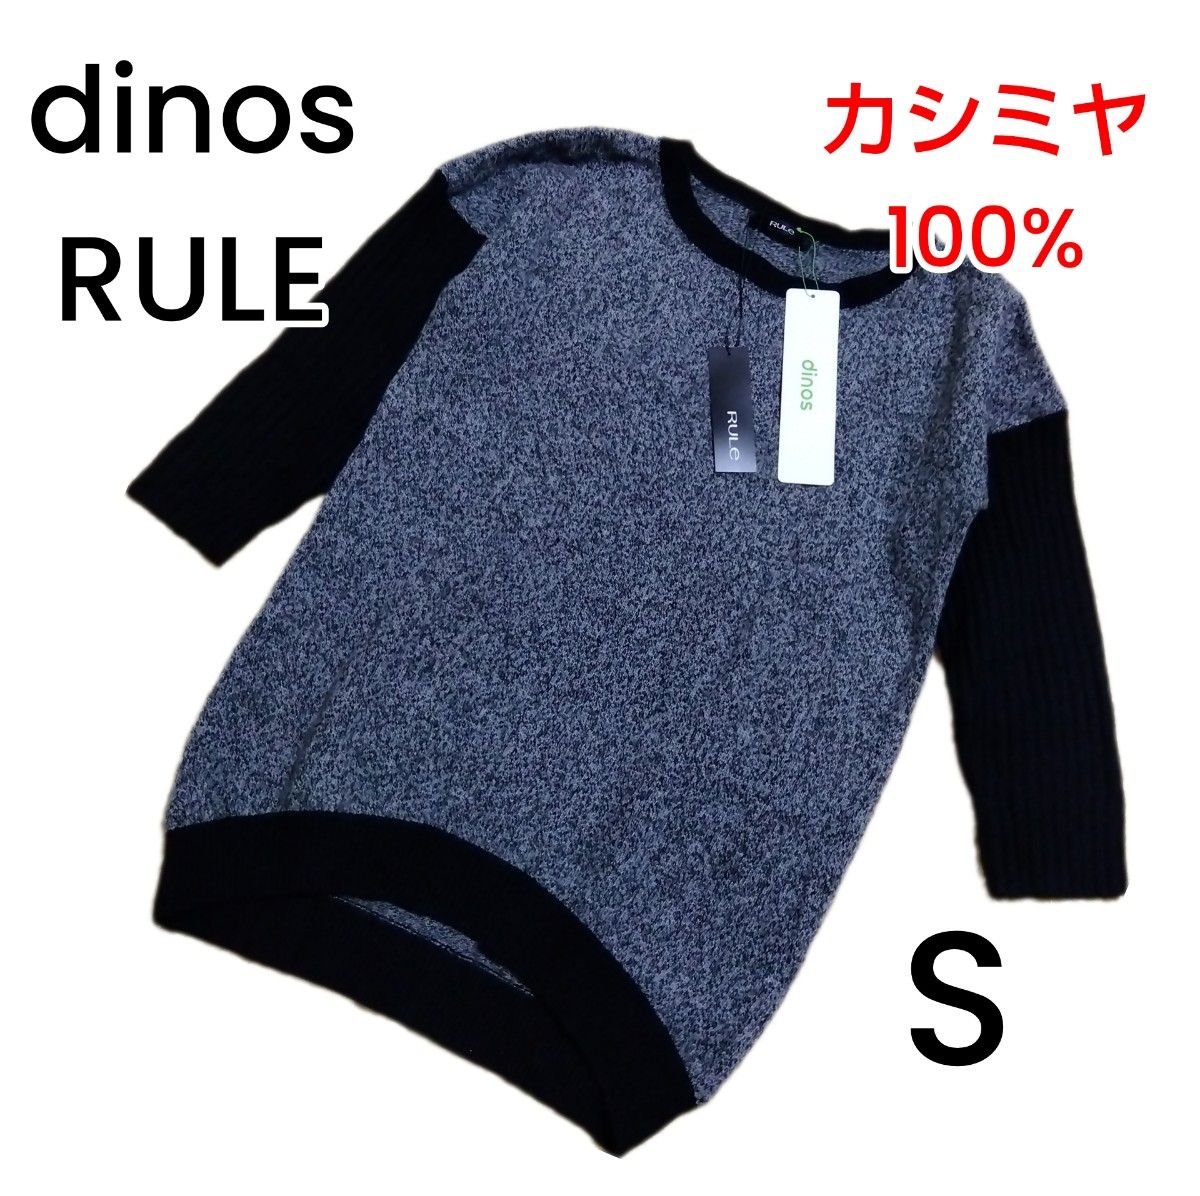 【新品未使用/dinos RULE】カシミヤ100% ニット Sサイズ